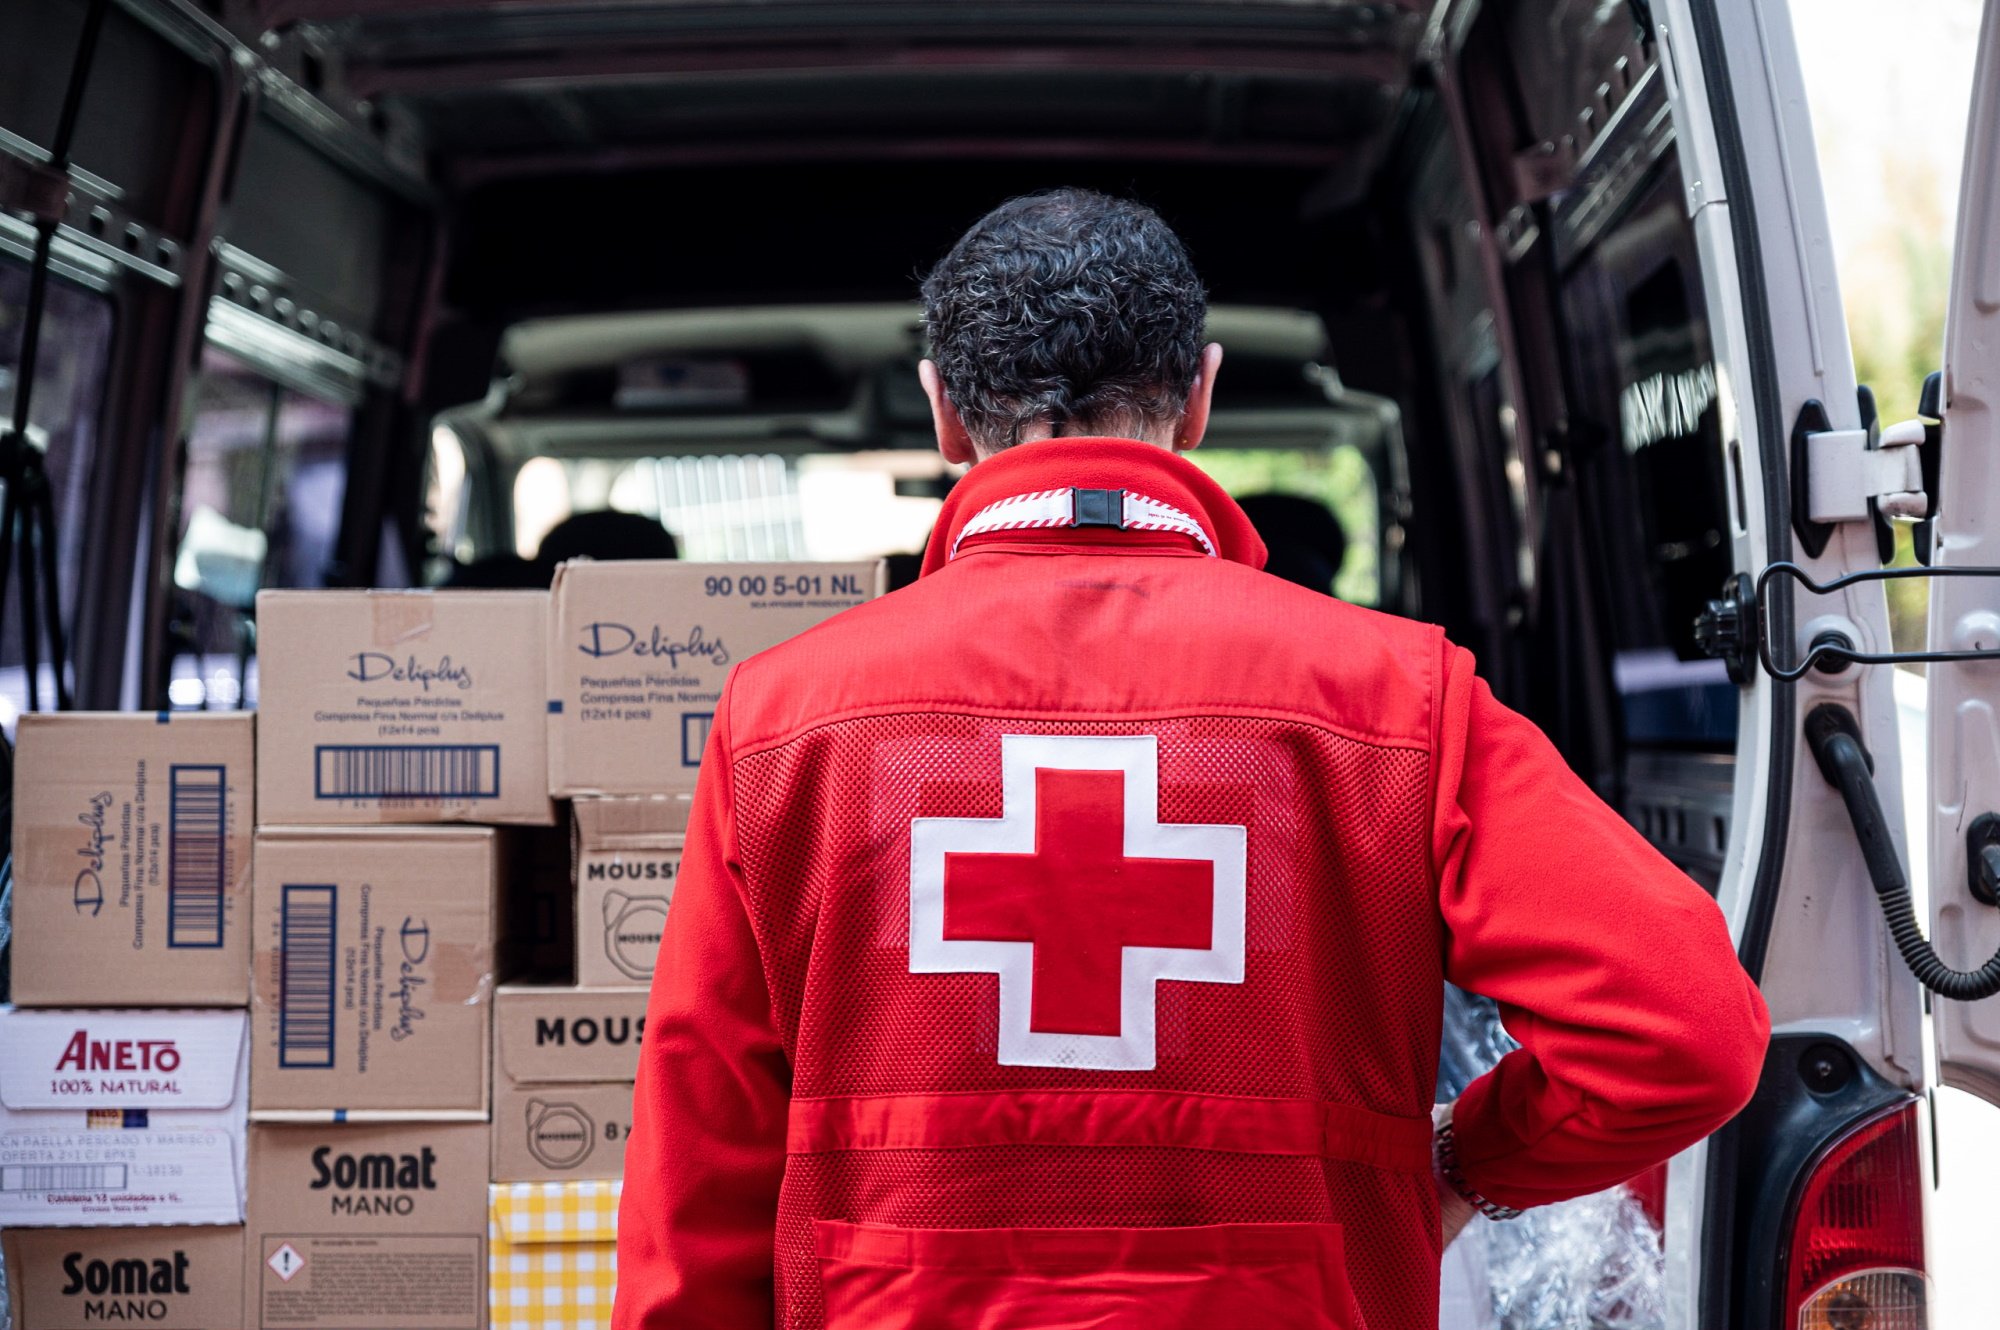 Creu Roja reparteix més de 64.000 joguines a 30.000 infants en risc de vulnerabilitat a Catalunya